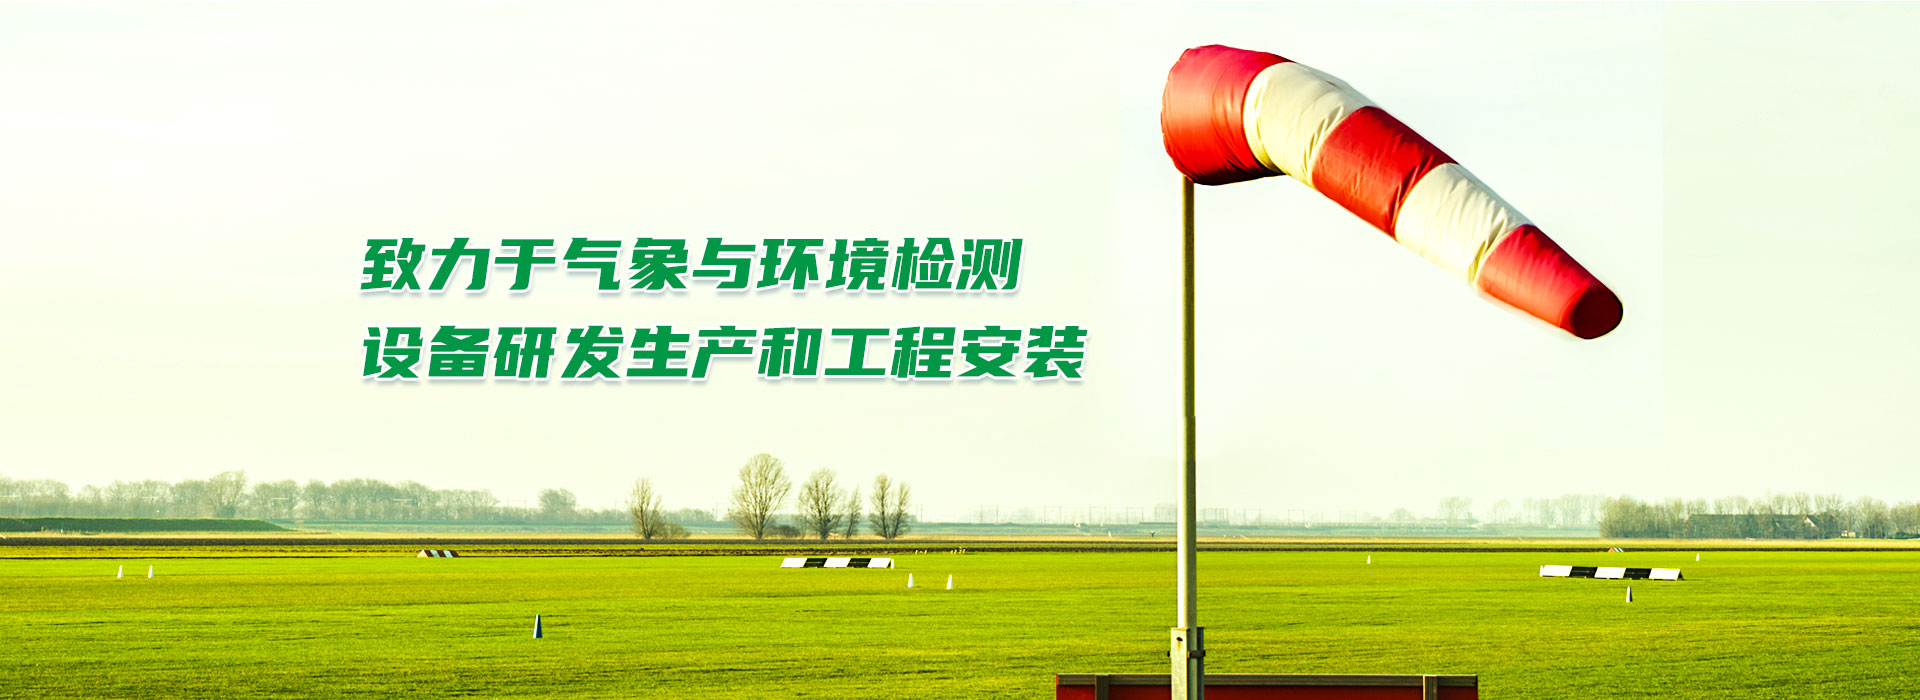 武汉泰禄徕环境系统有限公司